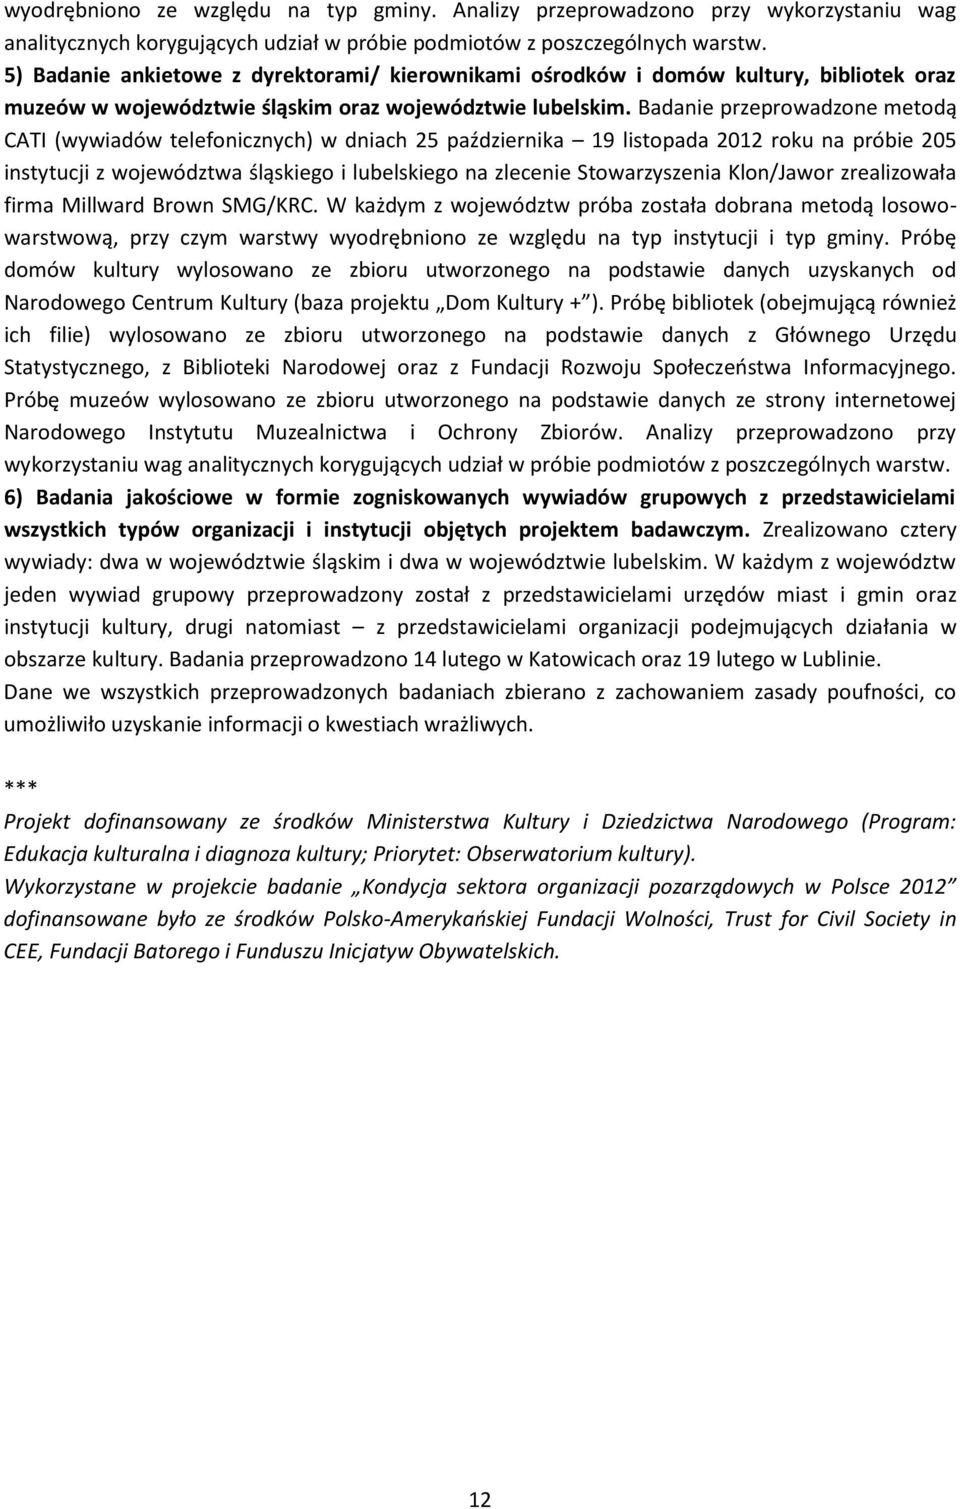 Badanie przeprowadzone metodą CATI (wywiadów telefonicznych) w dniach 25 października 19 listopada 2012 roku na próbie 205 instytucji z województwa śląskiego i lubelskiego na zlecenie Stowarzyszenia